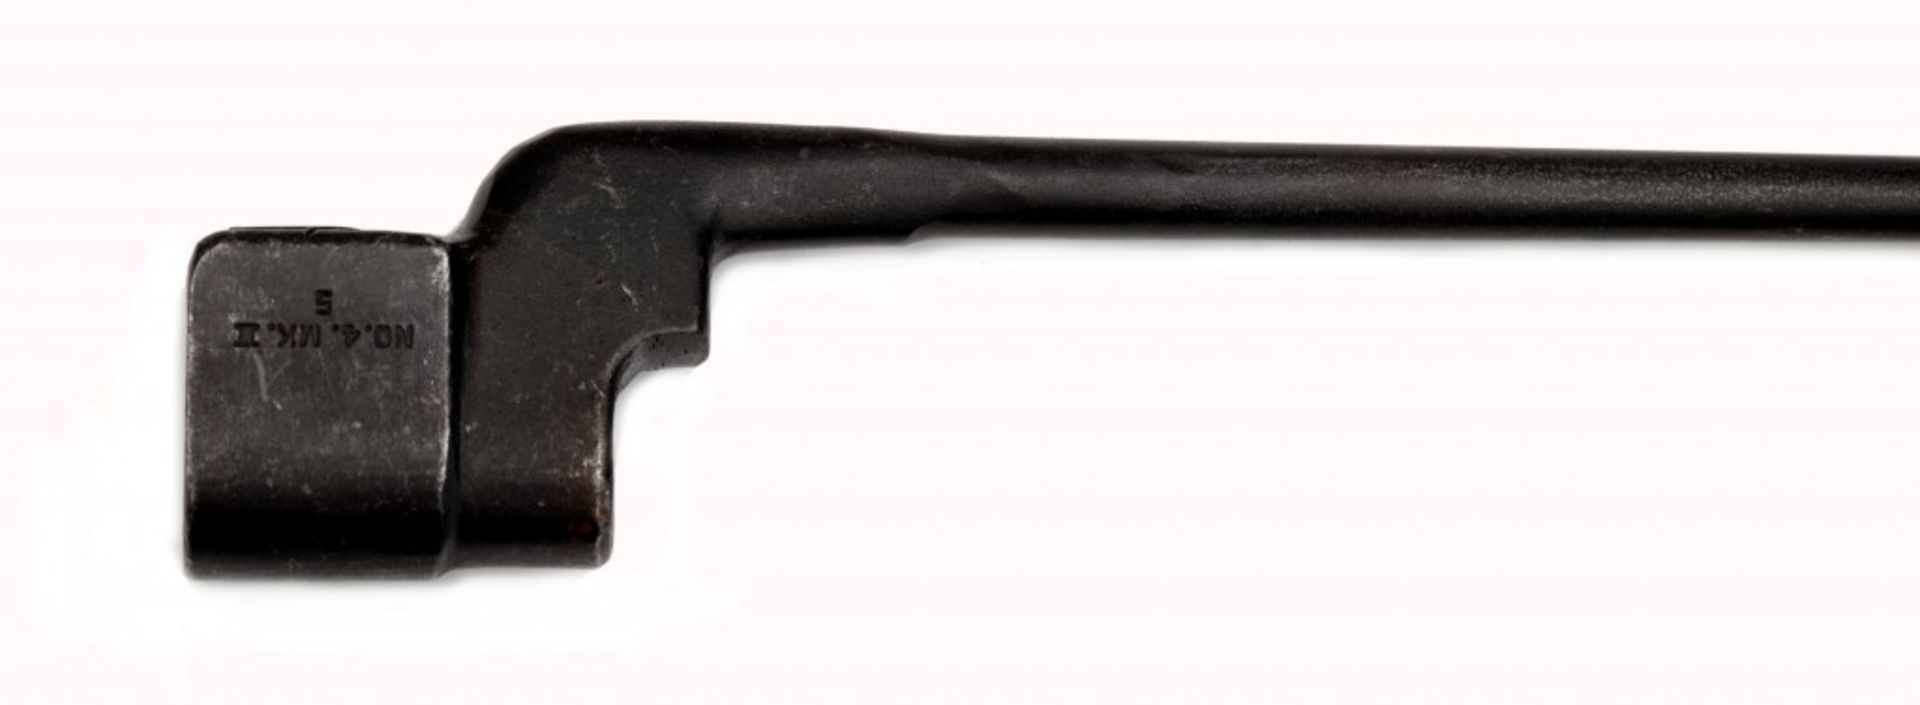 Bajonett No. 4 MK II für Lee-Enfield-Gewehr - Image 2 of 2